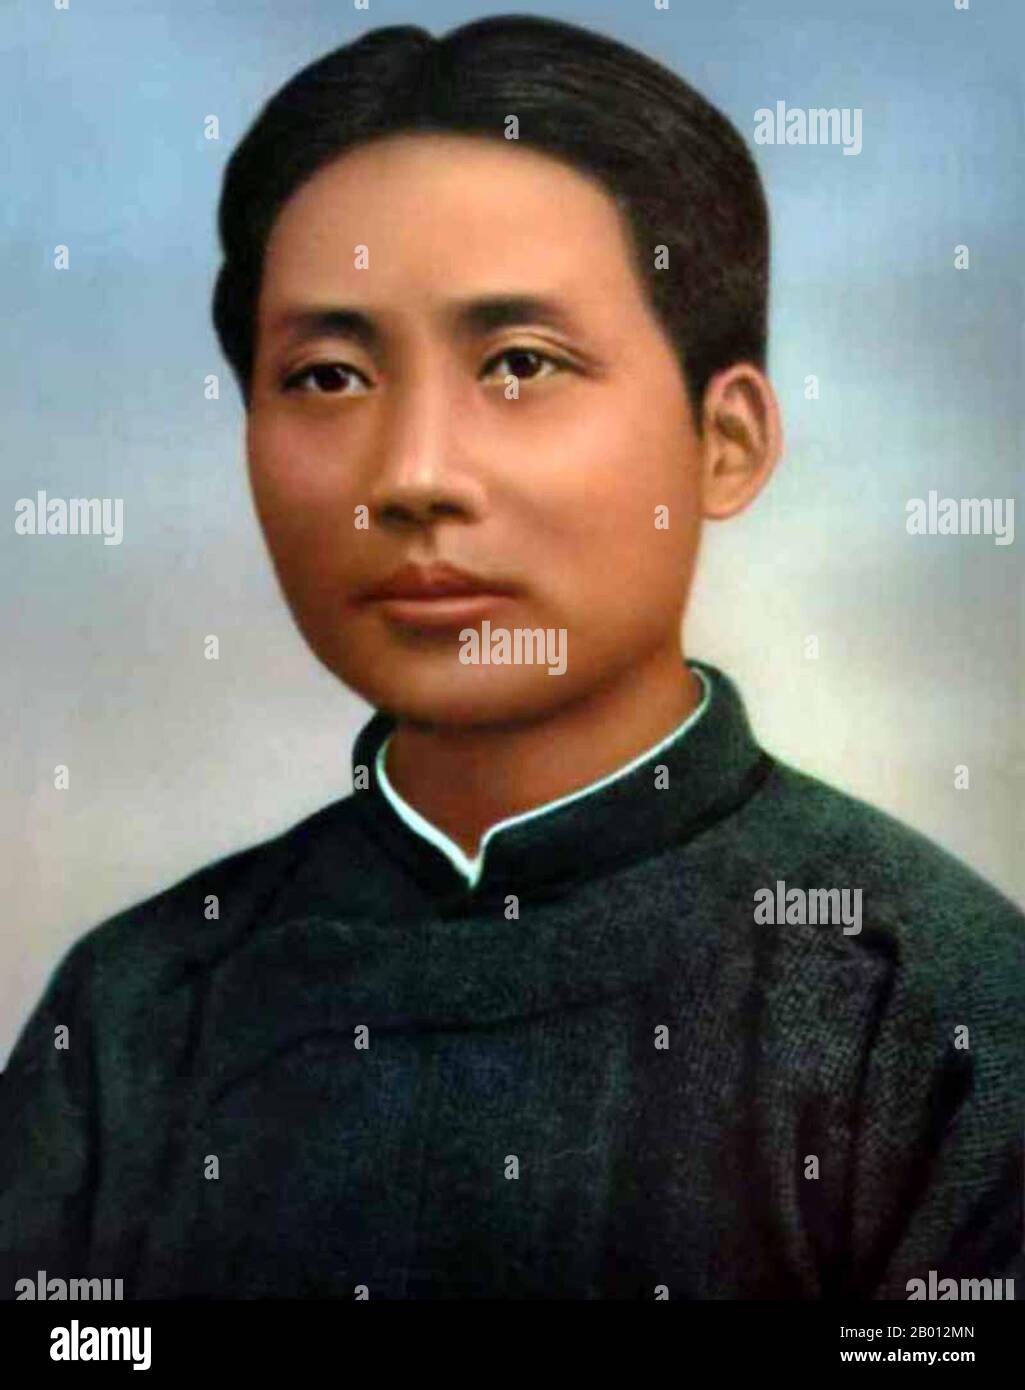 Cina: MAO Zedong (1893-1976), 1921. Mao Zedong, detto anche Mao TSE-tung (26 dicembre 1893 – 9 settembre 1976), è stato un . Comunemente indicato come presidente Mao, è stato l'architetto della Repubblica popolare Cinese (PRC) dalla sua fondazione nel 1949, e ha mantenuto il controllo autoritario sulla nazione fino alla sua morte nel 1976. Il suo contributo teorico al marxismo-leninismo, insieme alle sue strategie militari e politiche, sono noti come Maoismo. Foto Stock